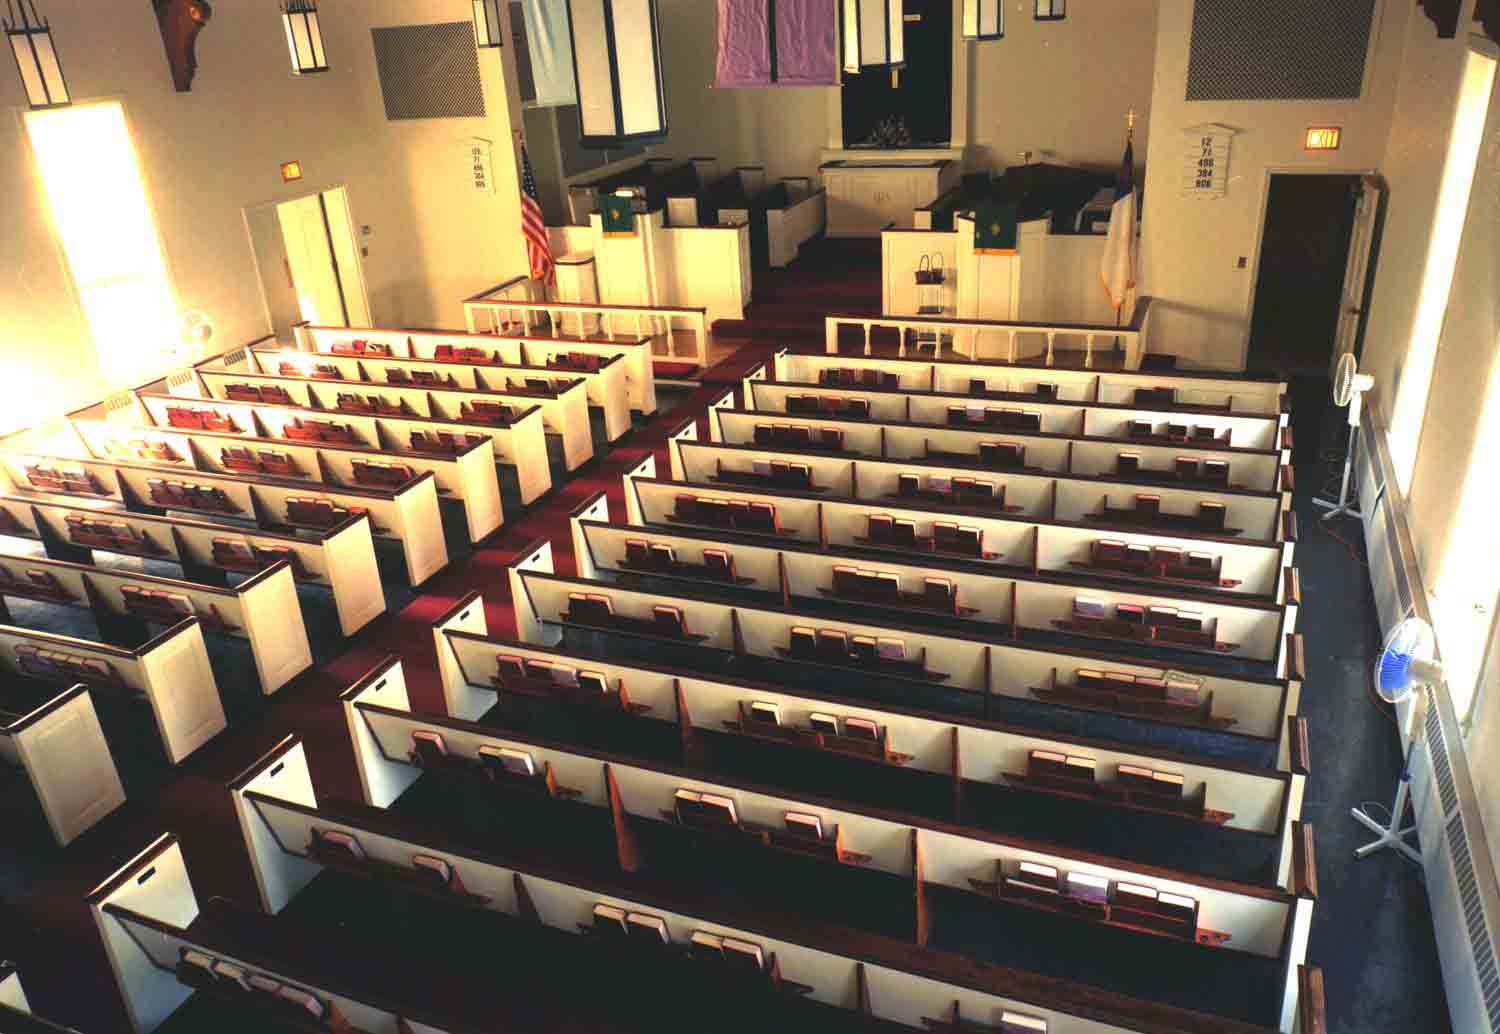  Ardsley United Methodist Church, Ardsley, NY, 2000